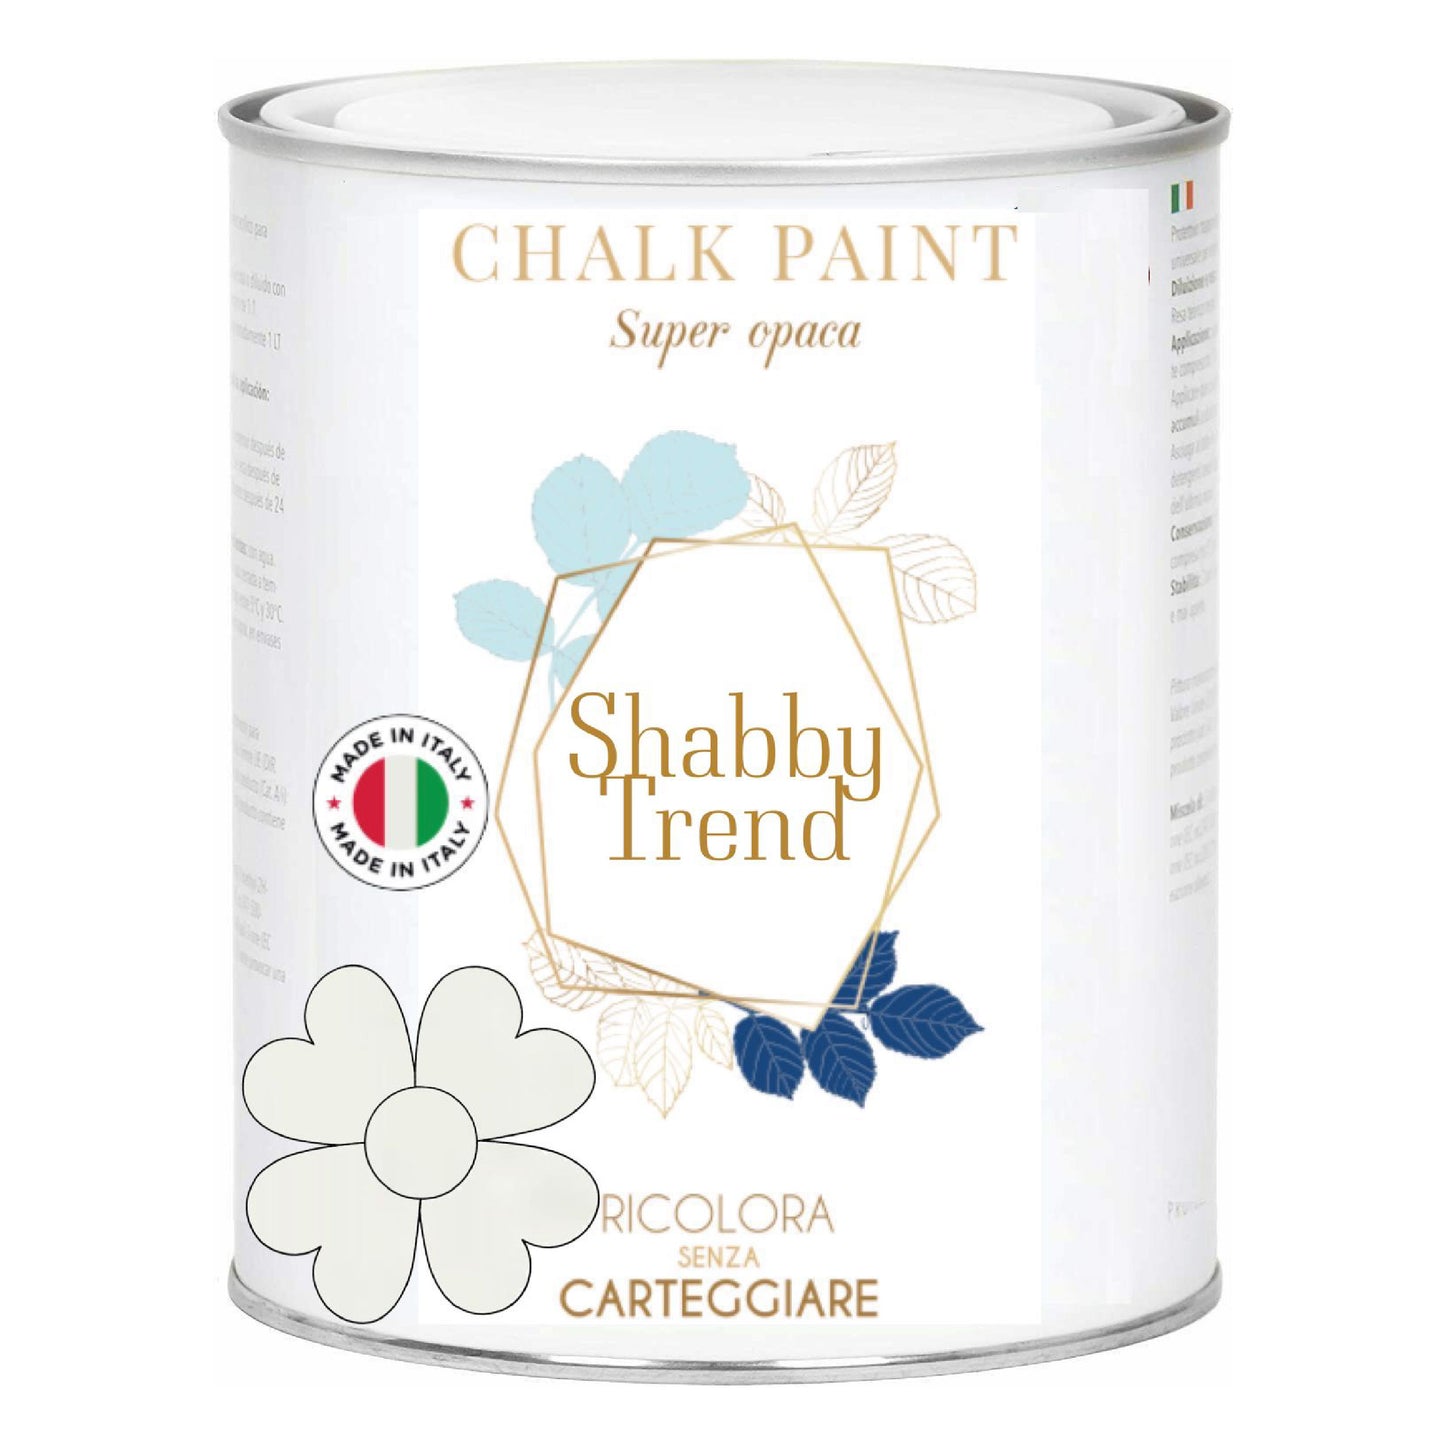 SHABBY TREND® CHALK PAINT Pittura Shabby Chic Vintage